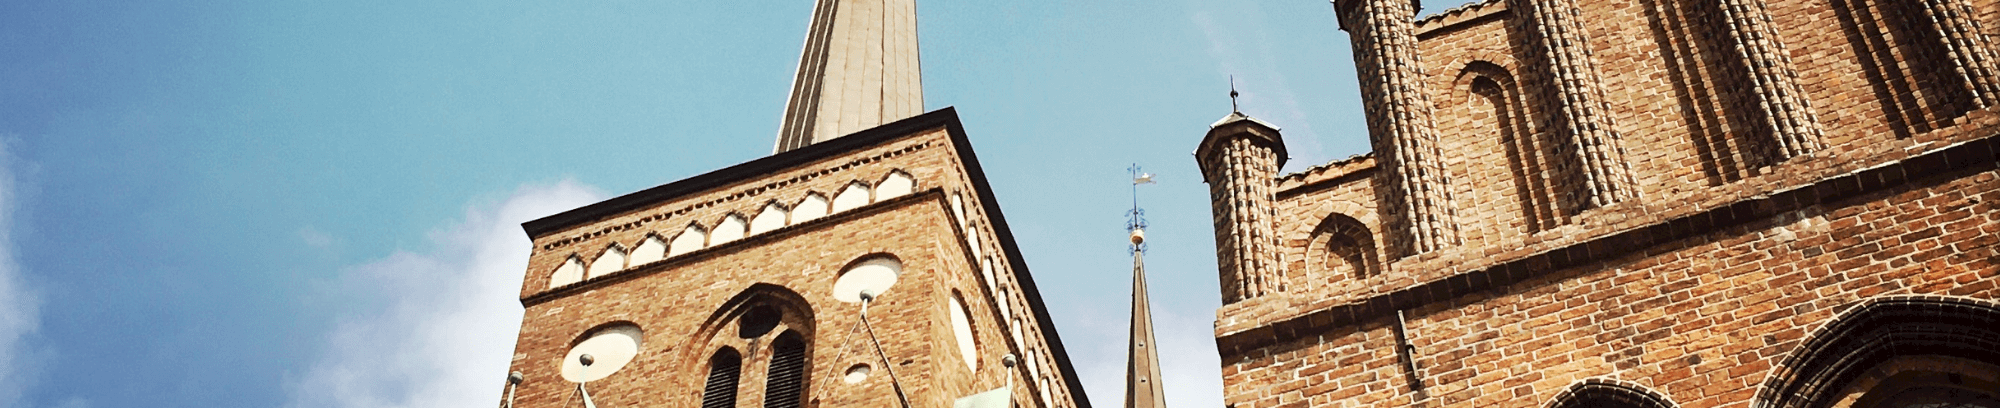 Oplev Roskilde Domkirke i børnehøjde på vores rundtur for børn og voksne. 